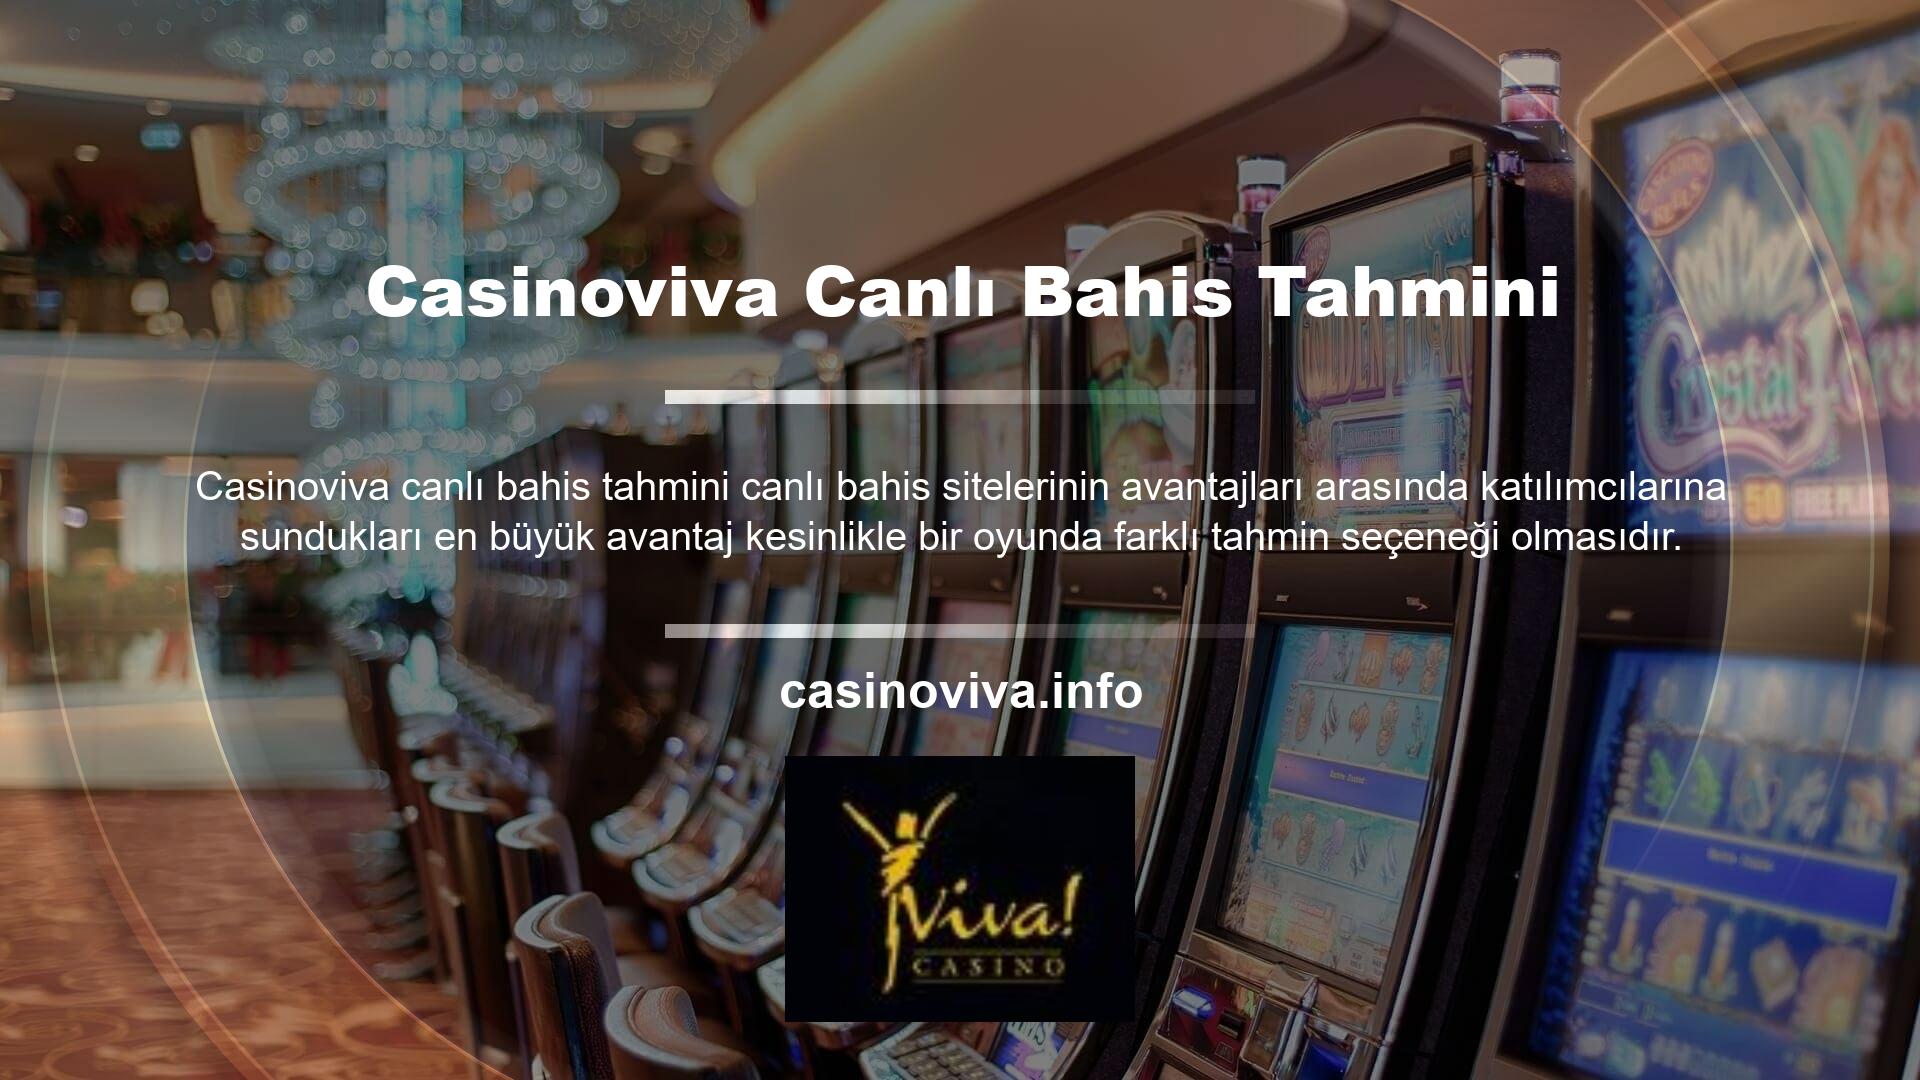 Casinoviva, tercih ettiğiniz oyun veya spor dalından bağımsız olarak aynı zengin canlı bahis içeriğini sunar